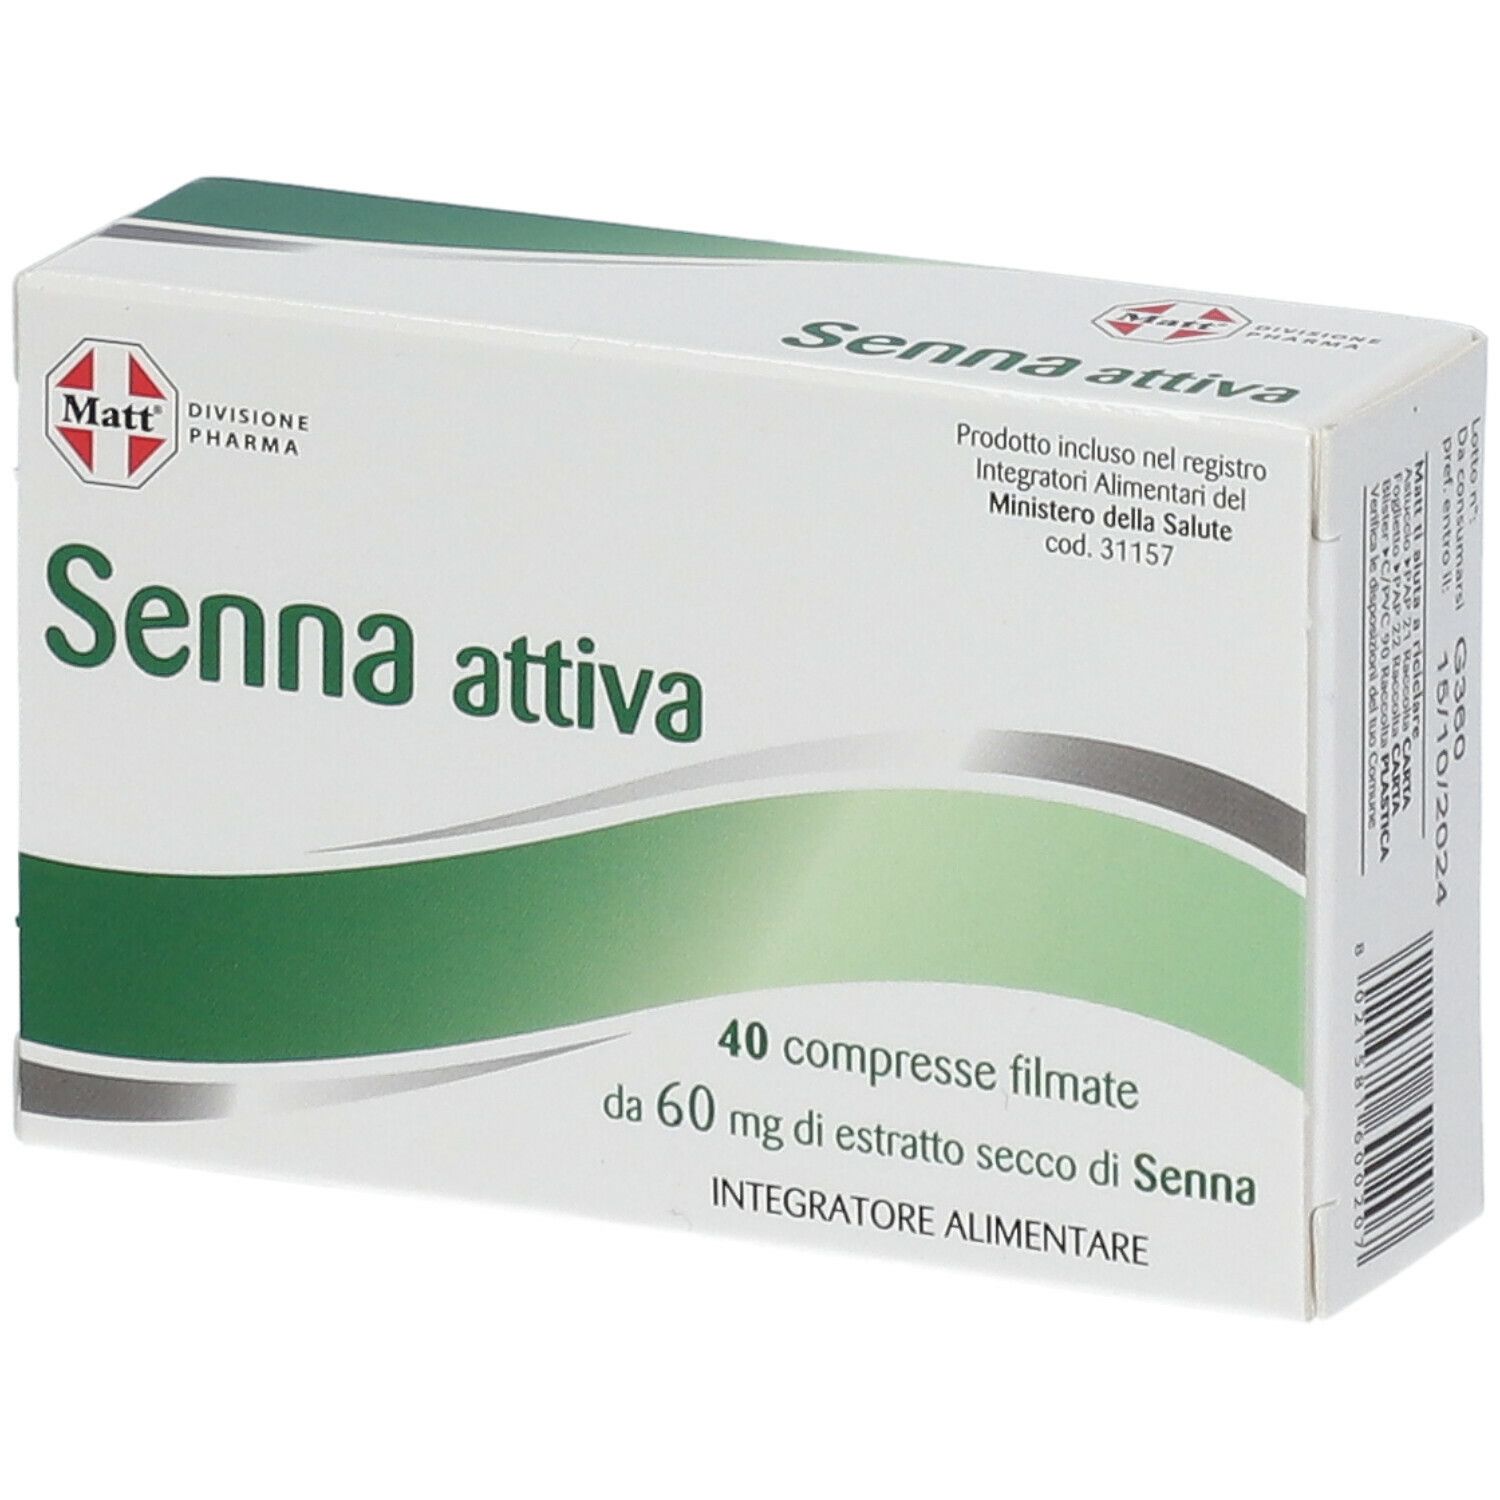 Matt® Pharma Senna Attiva